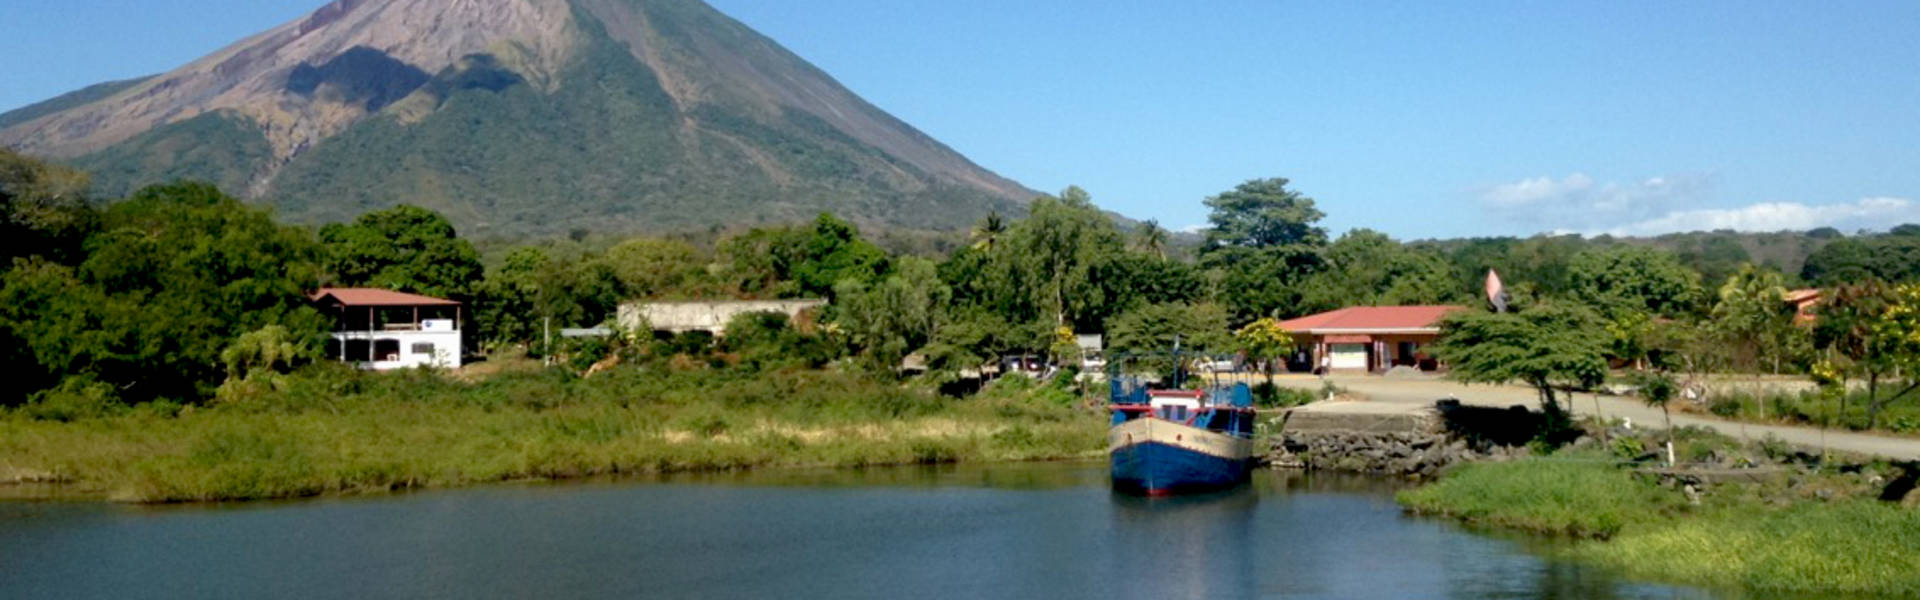 Ometepe, a volcanic island in Lake Nicaragua